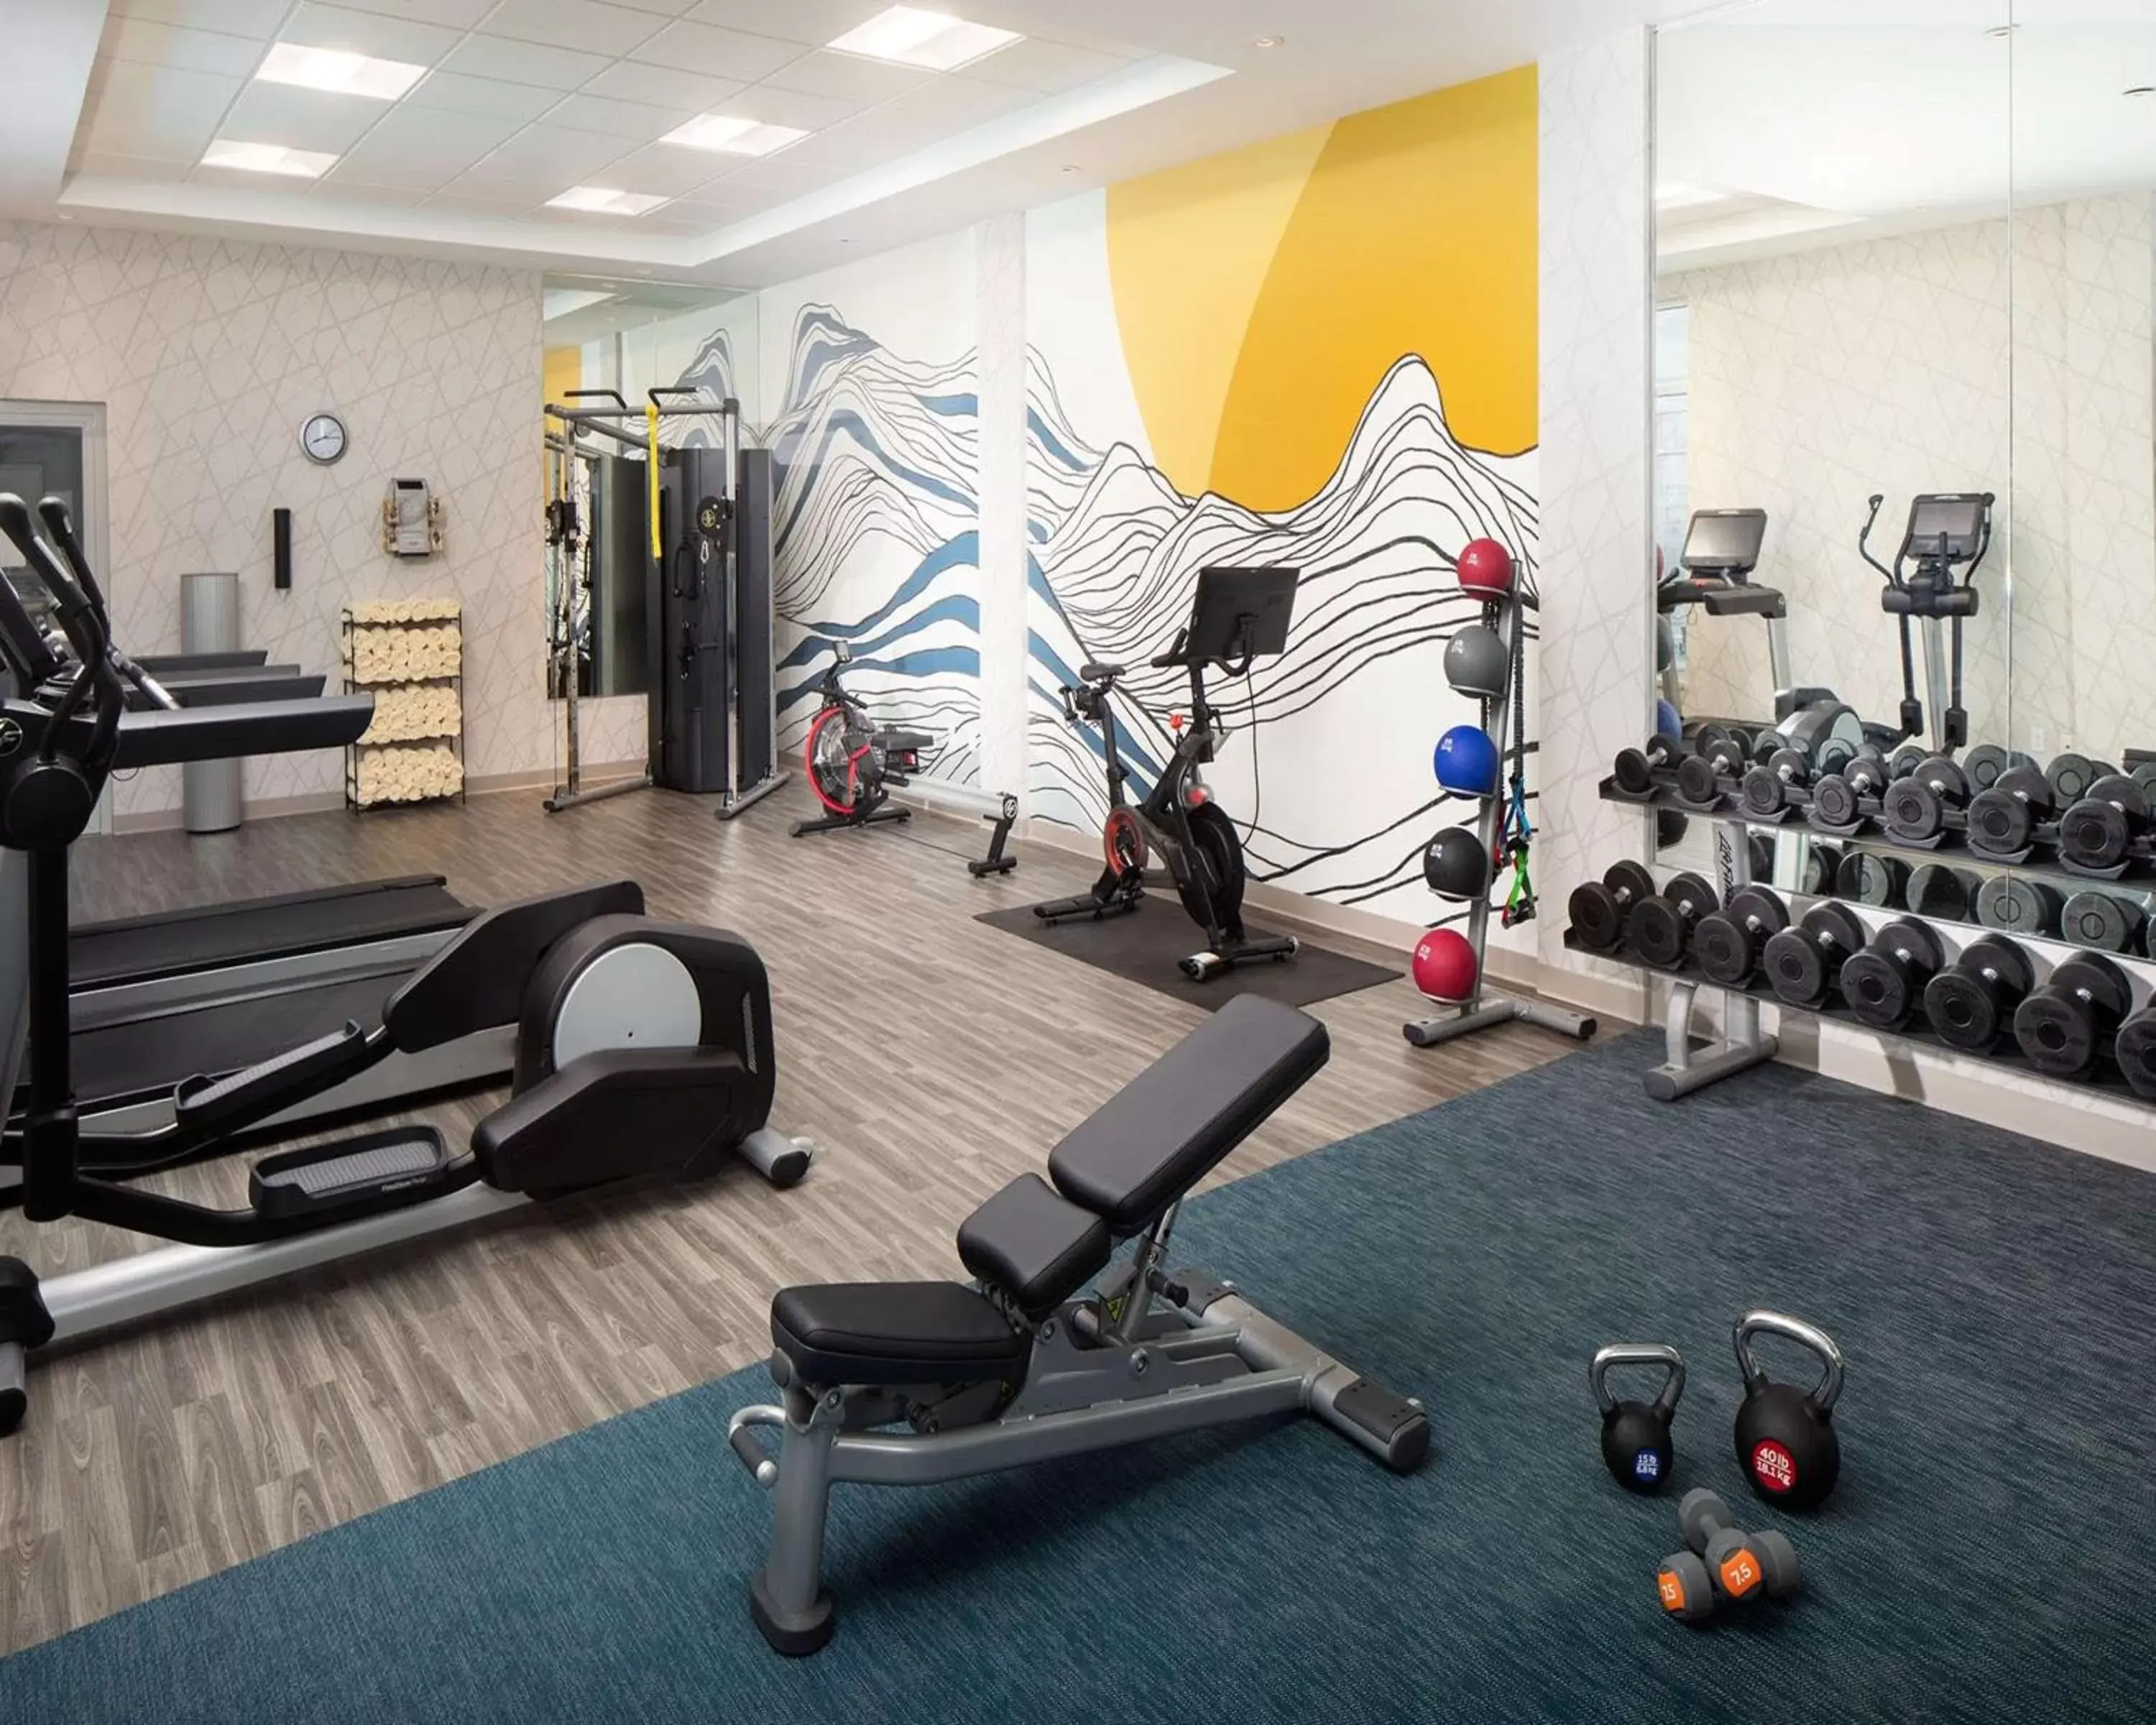 Fitness centre/facilities, Fitness Center/Facilities in Hyatt Place Harrisonburg